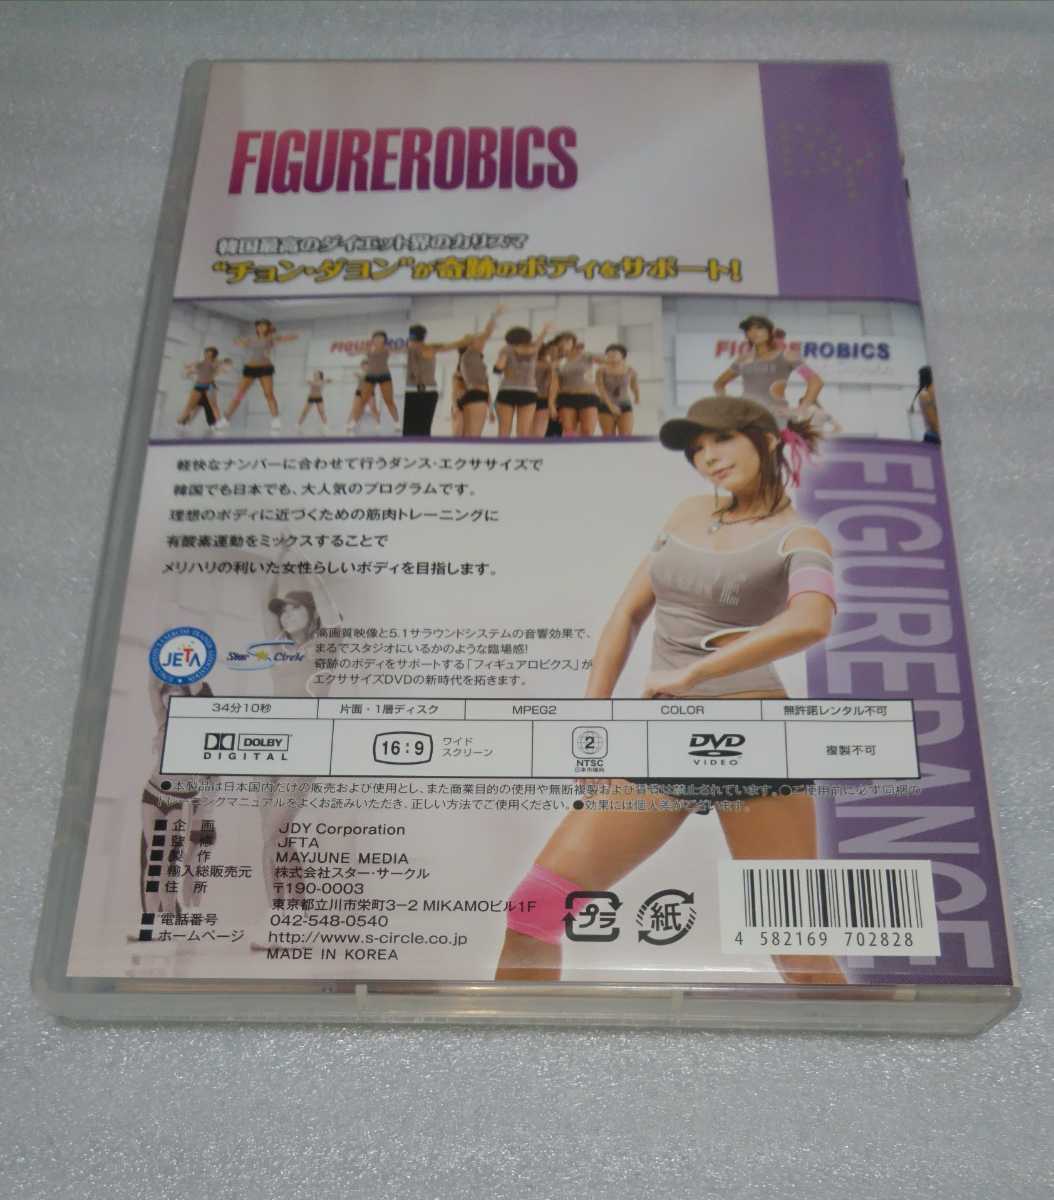 小冊子付 JETA確認済DVD FIGUREROBICS DISC 3 ダンスプログラム編 モムチャン ダイエット ダンス エクササイズ 4582169702828 チョンダヨン_※操作は複数回、確認済みです。